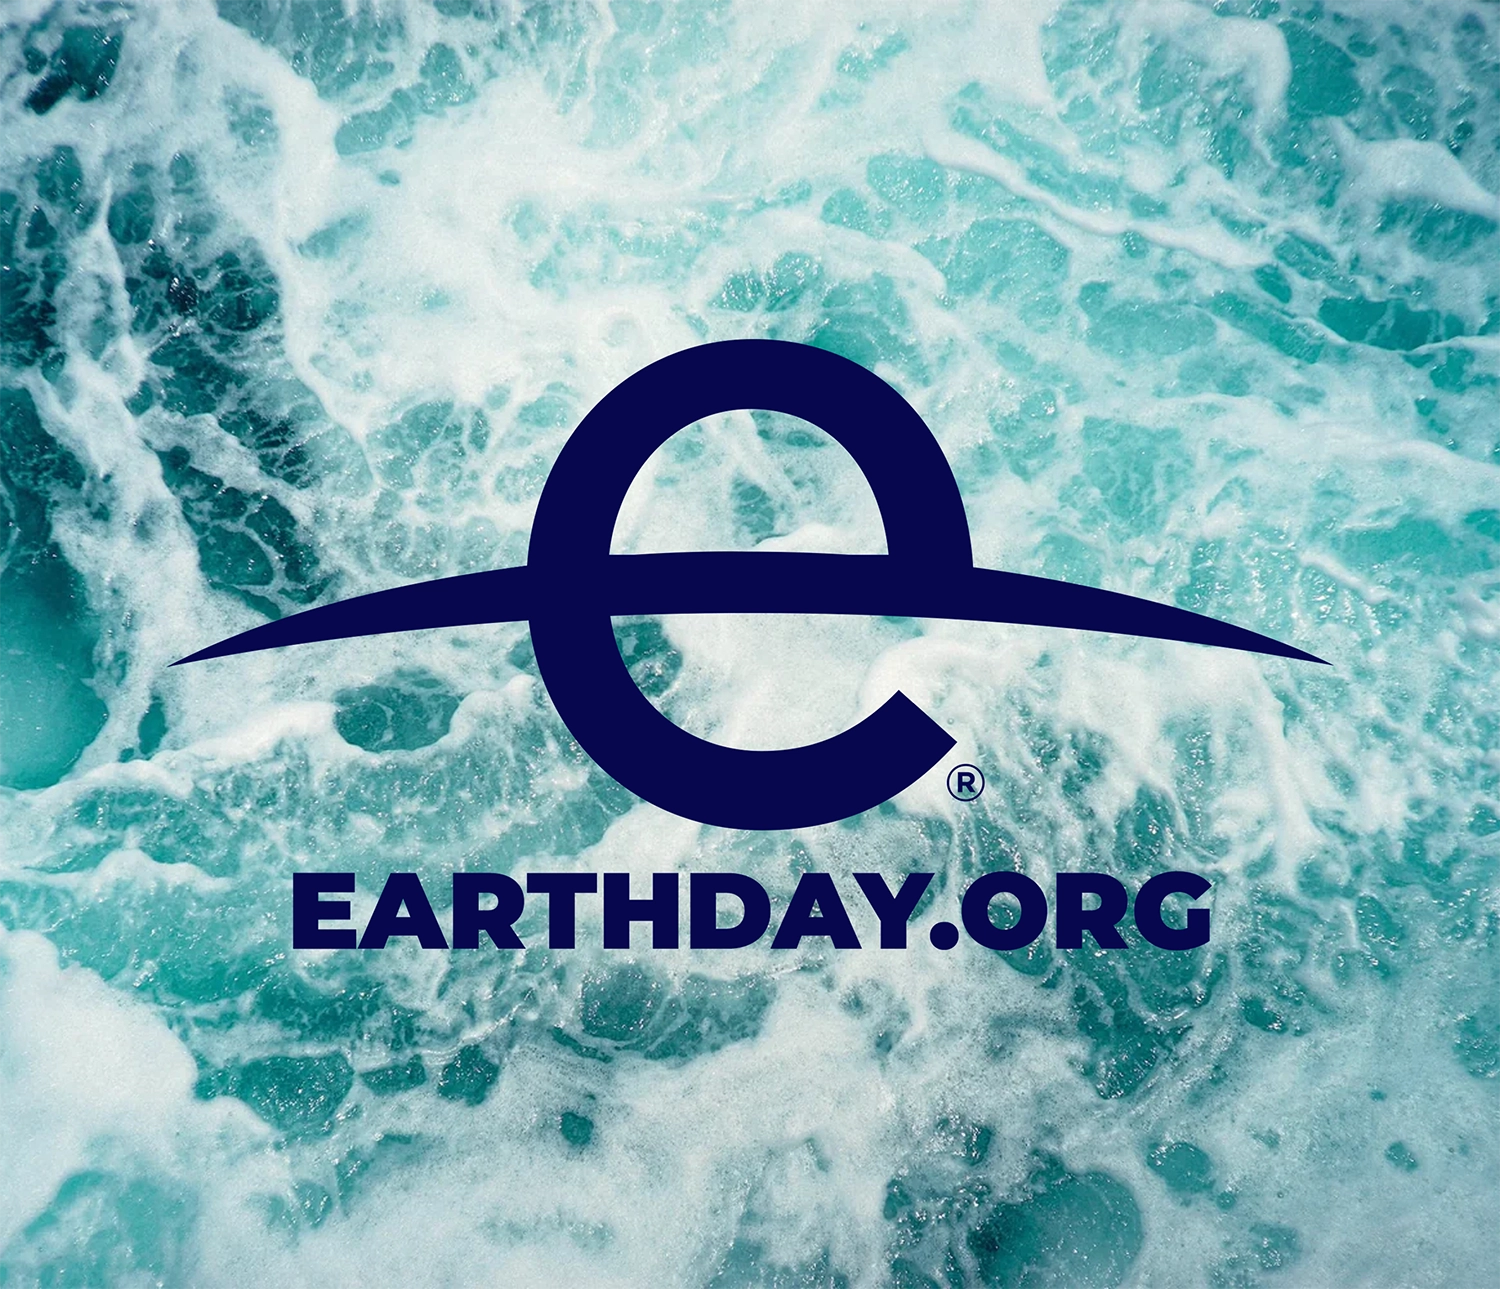 earthday.org